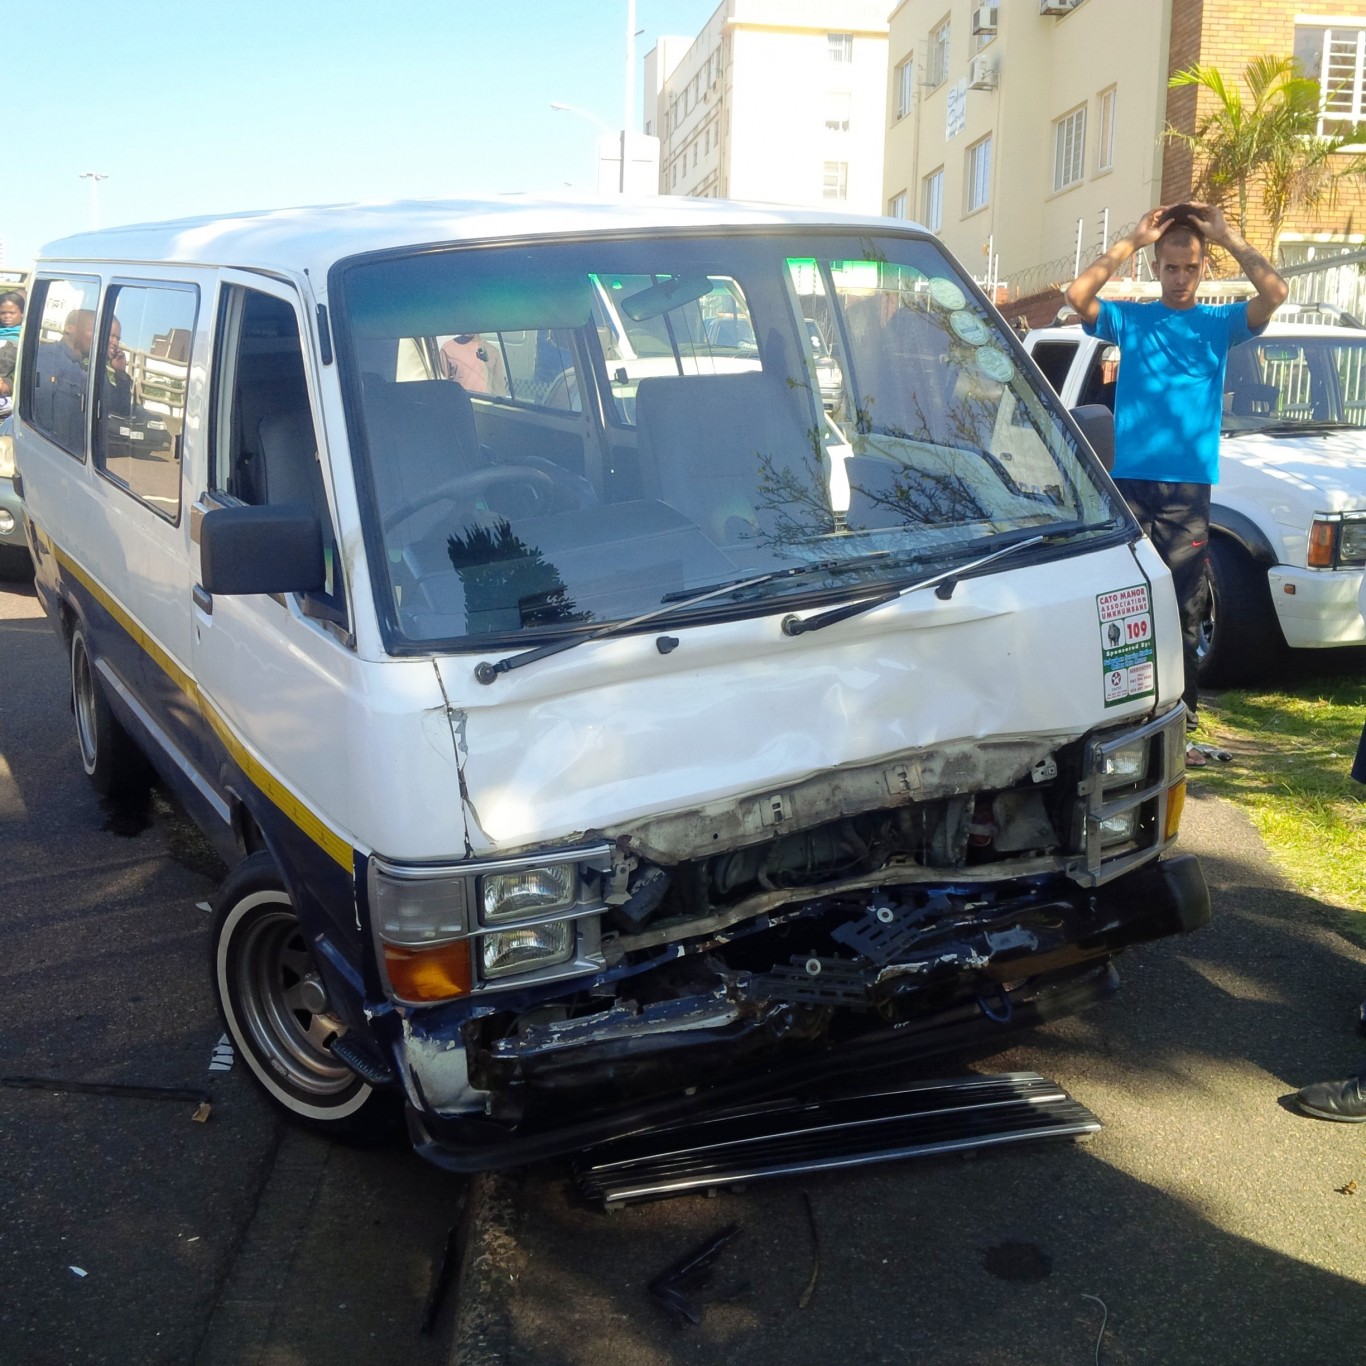 14 injured in Bus crash in Durban